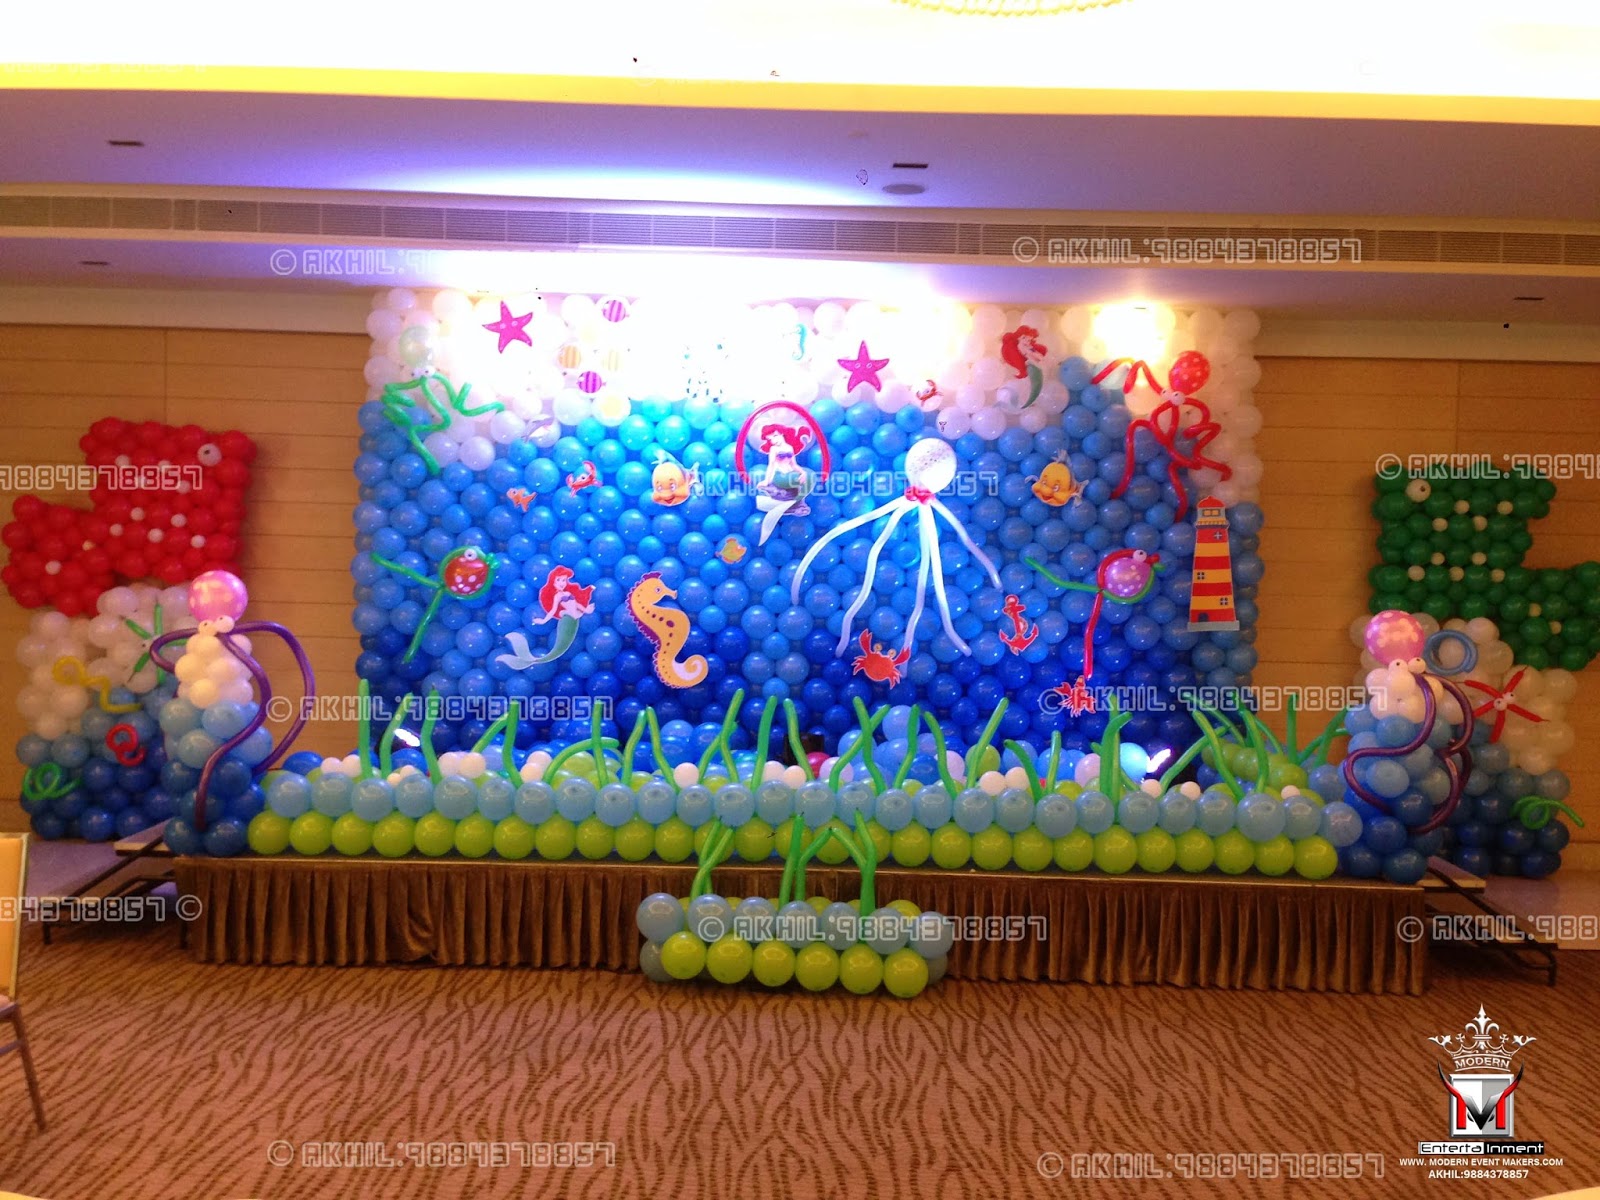 A Top Class Balloon Decorators in chennai  Akhil 9884378857 